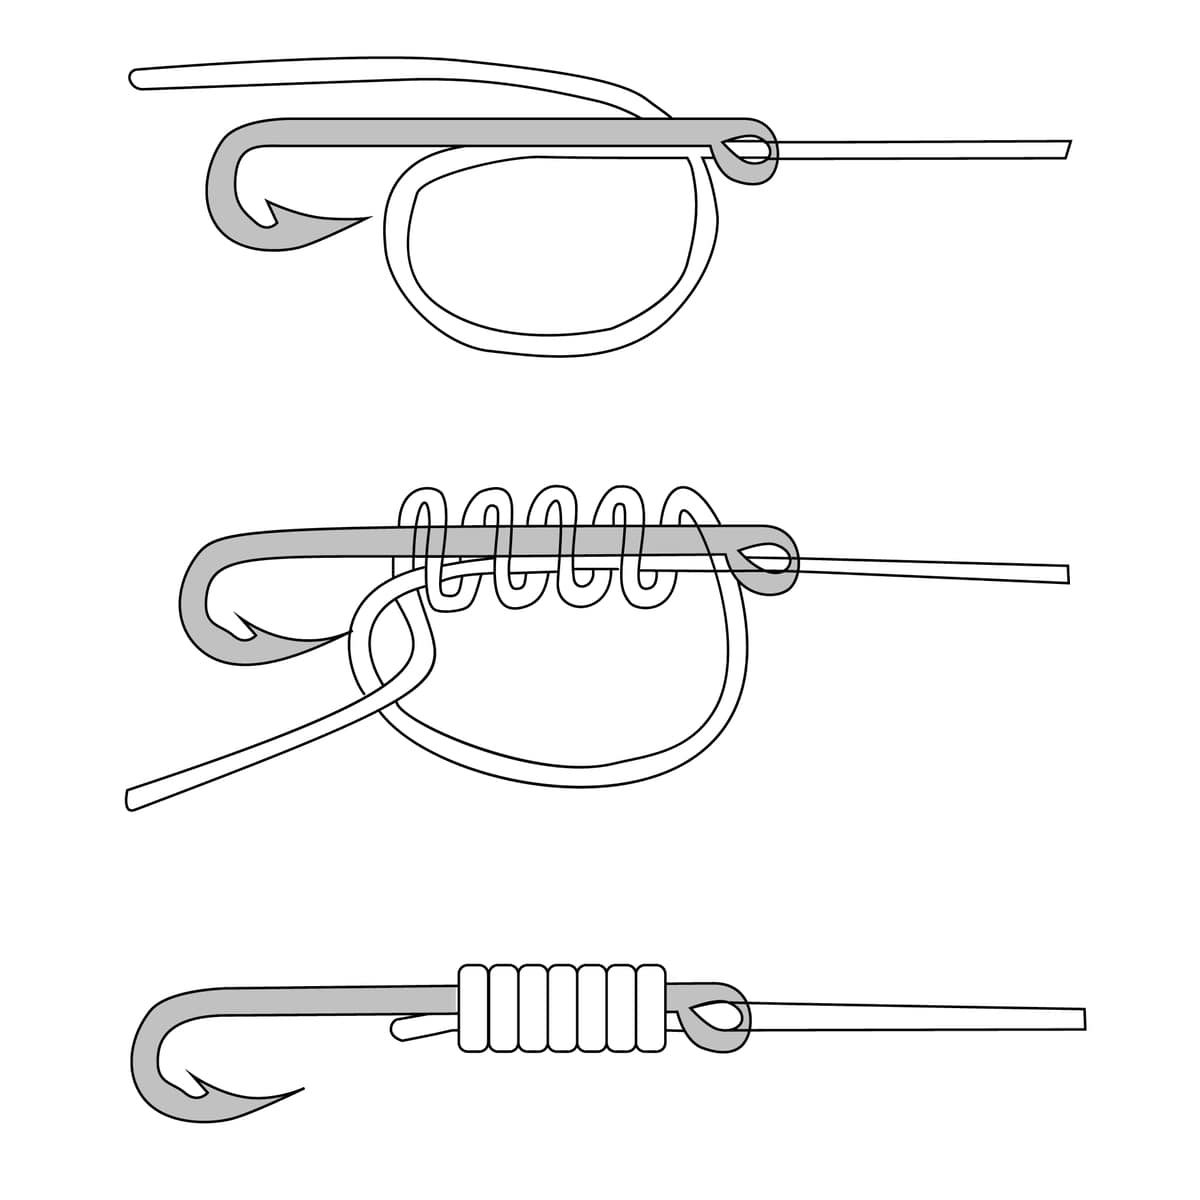 Wirbel mit Grinnerknoten- Anleitung der Knotung